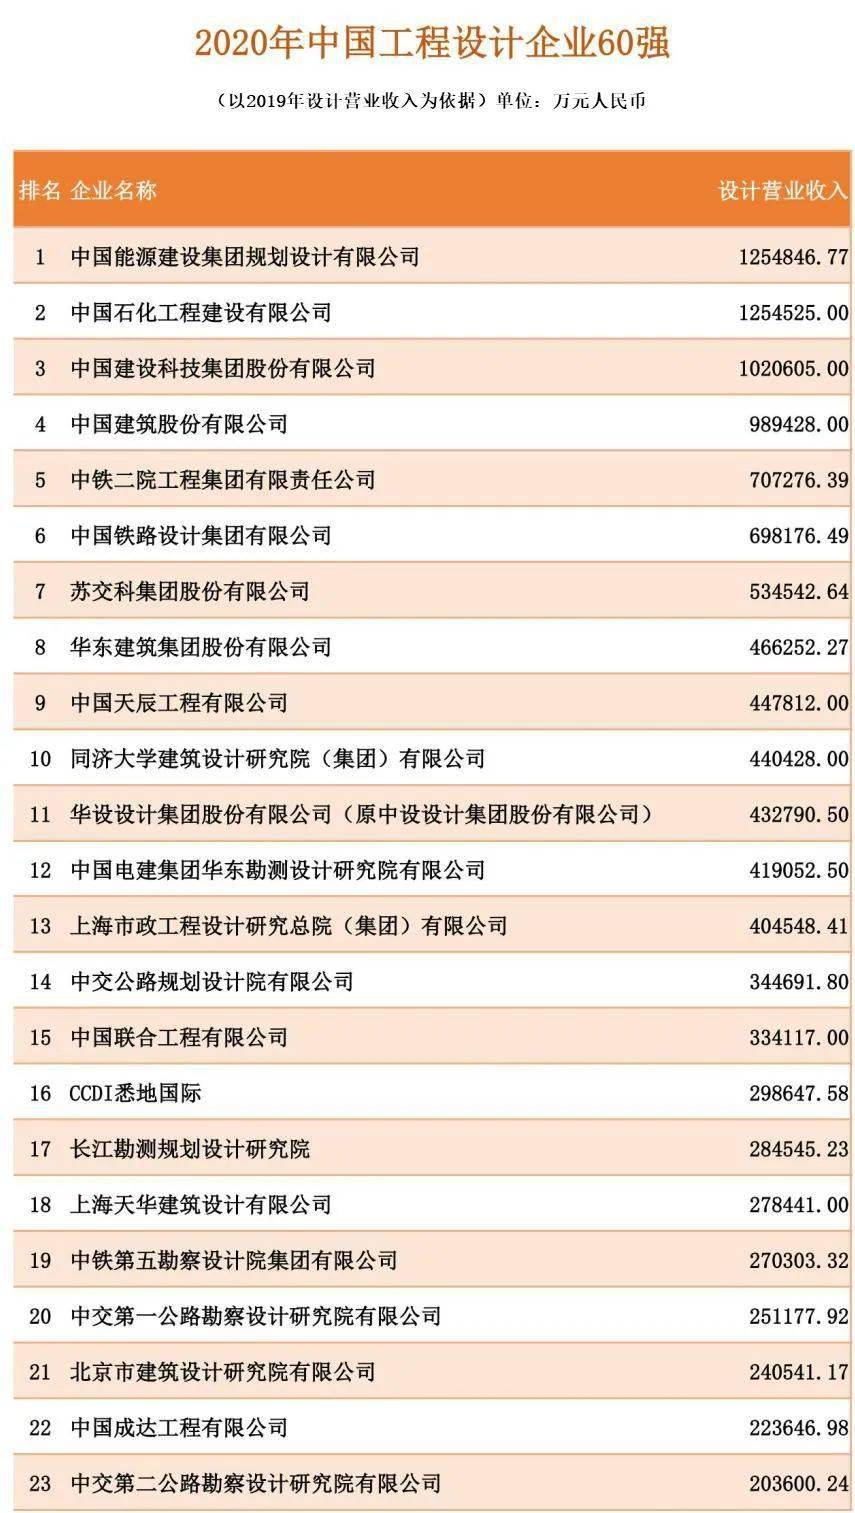 2021年度nba竞猜官网中国承包商80强和工程设计企业60强榜单发布